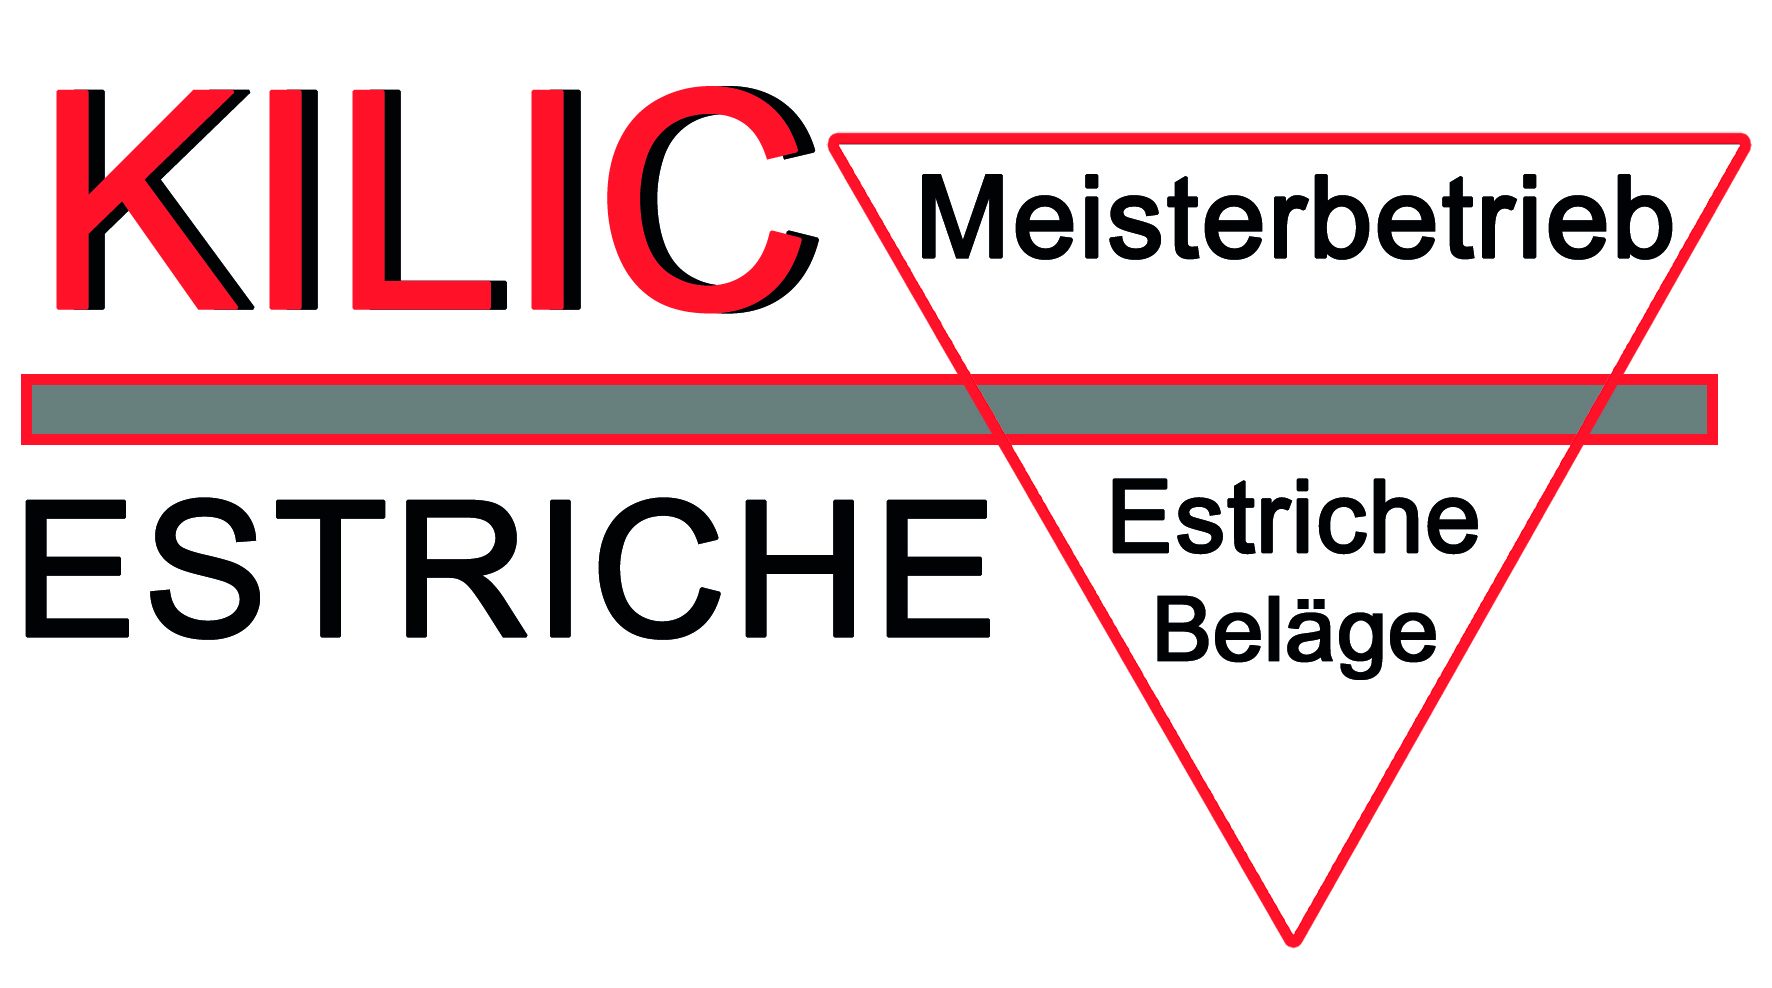 Kilic-Estrich